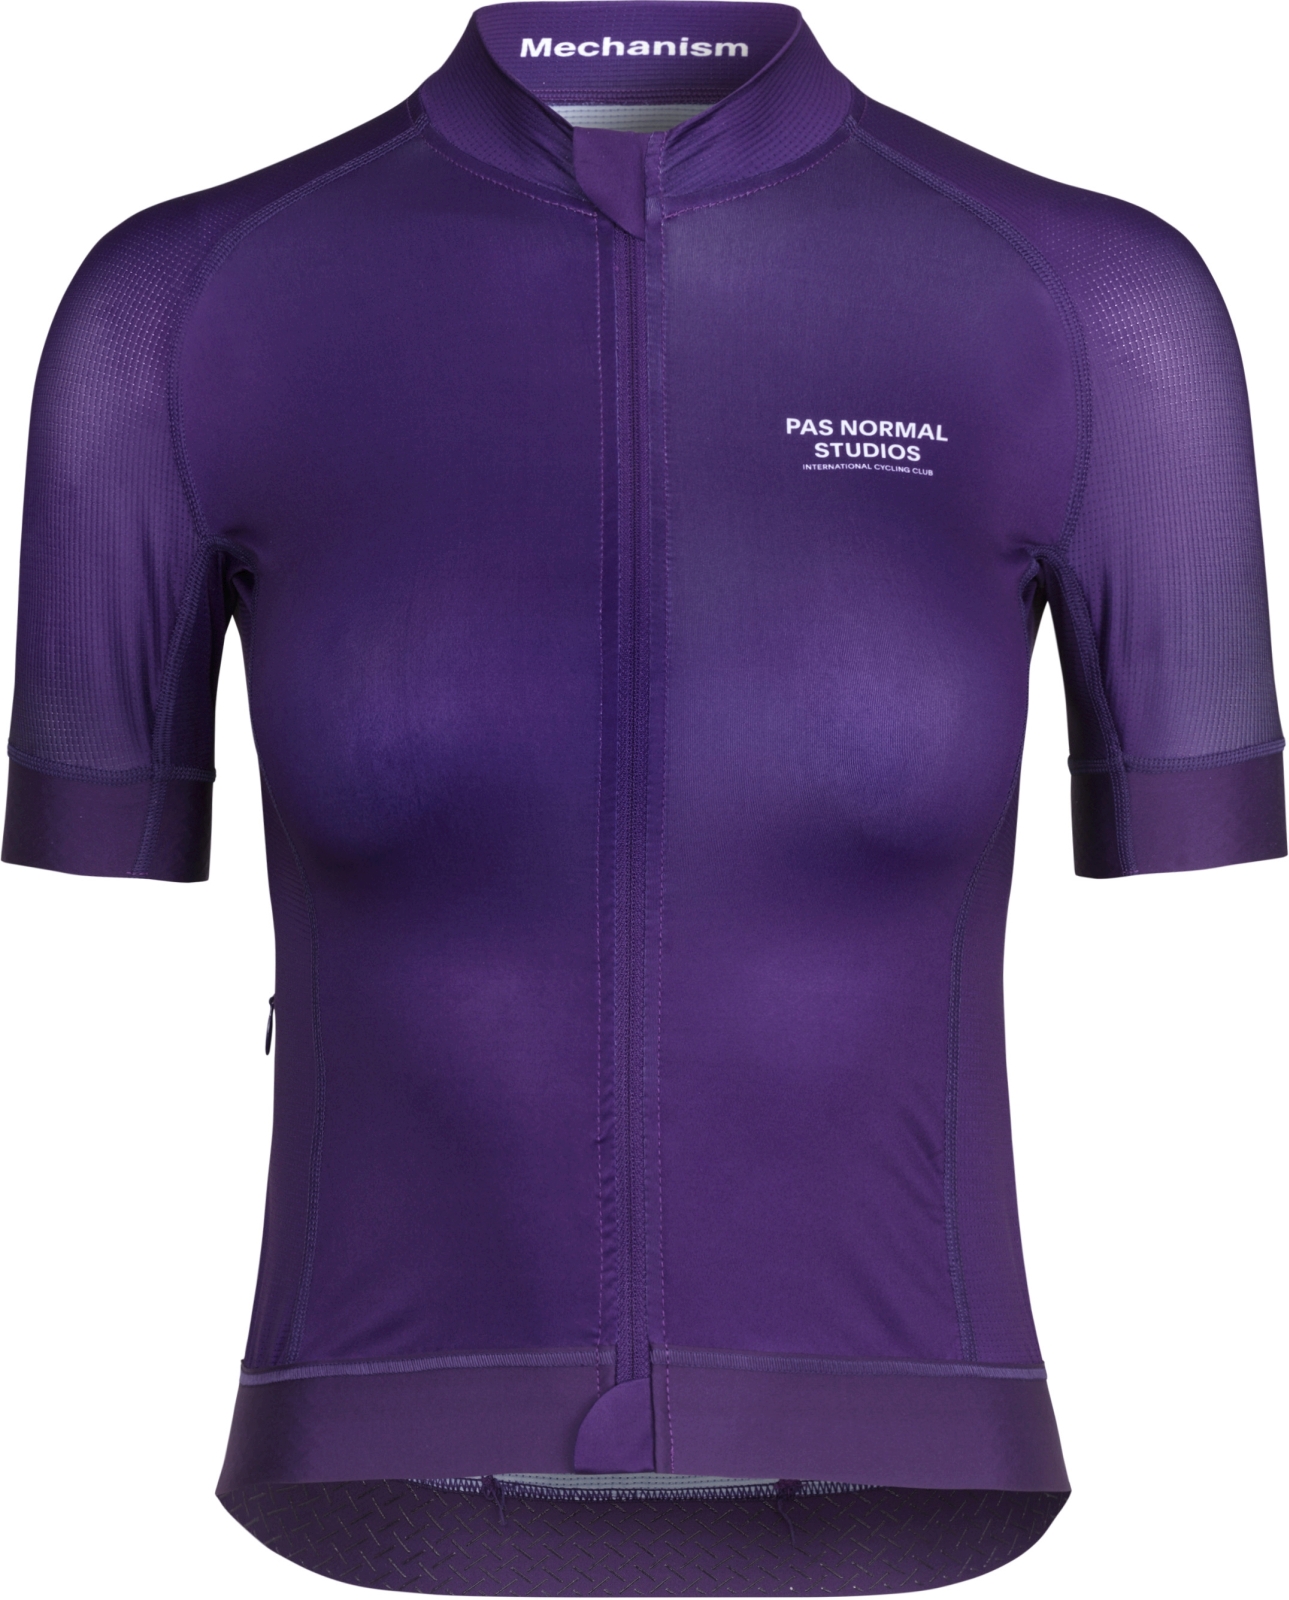 Levně Pas Normal Studios Womens Mechanism Jersey Purple L